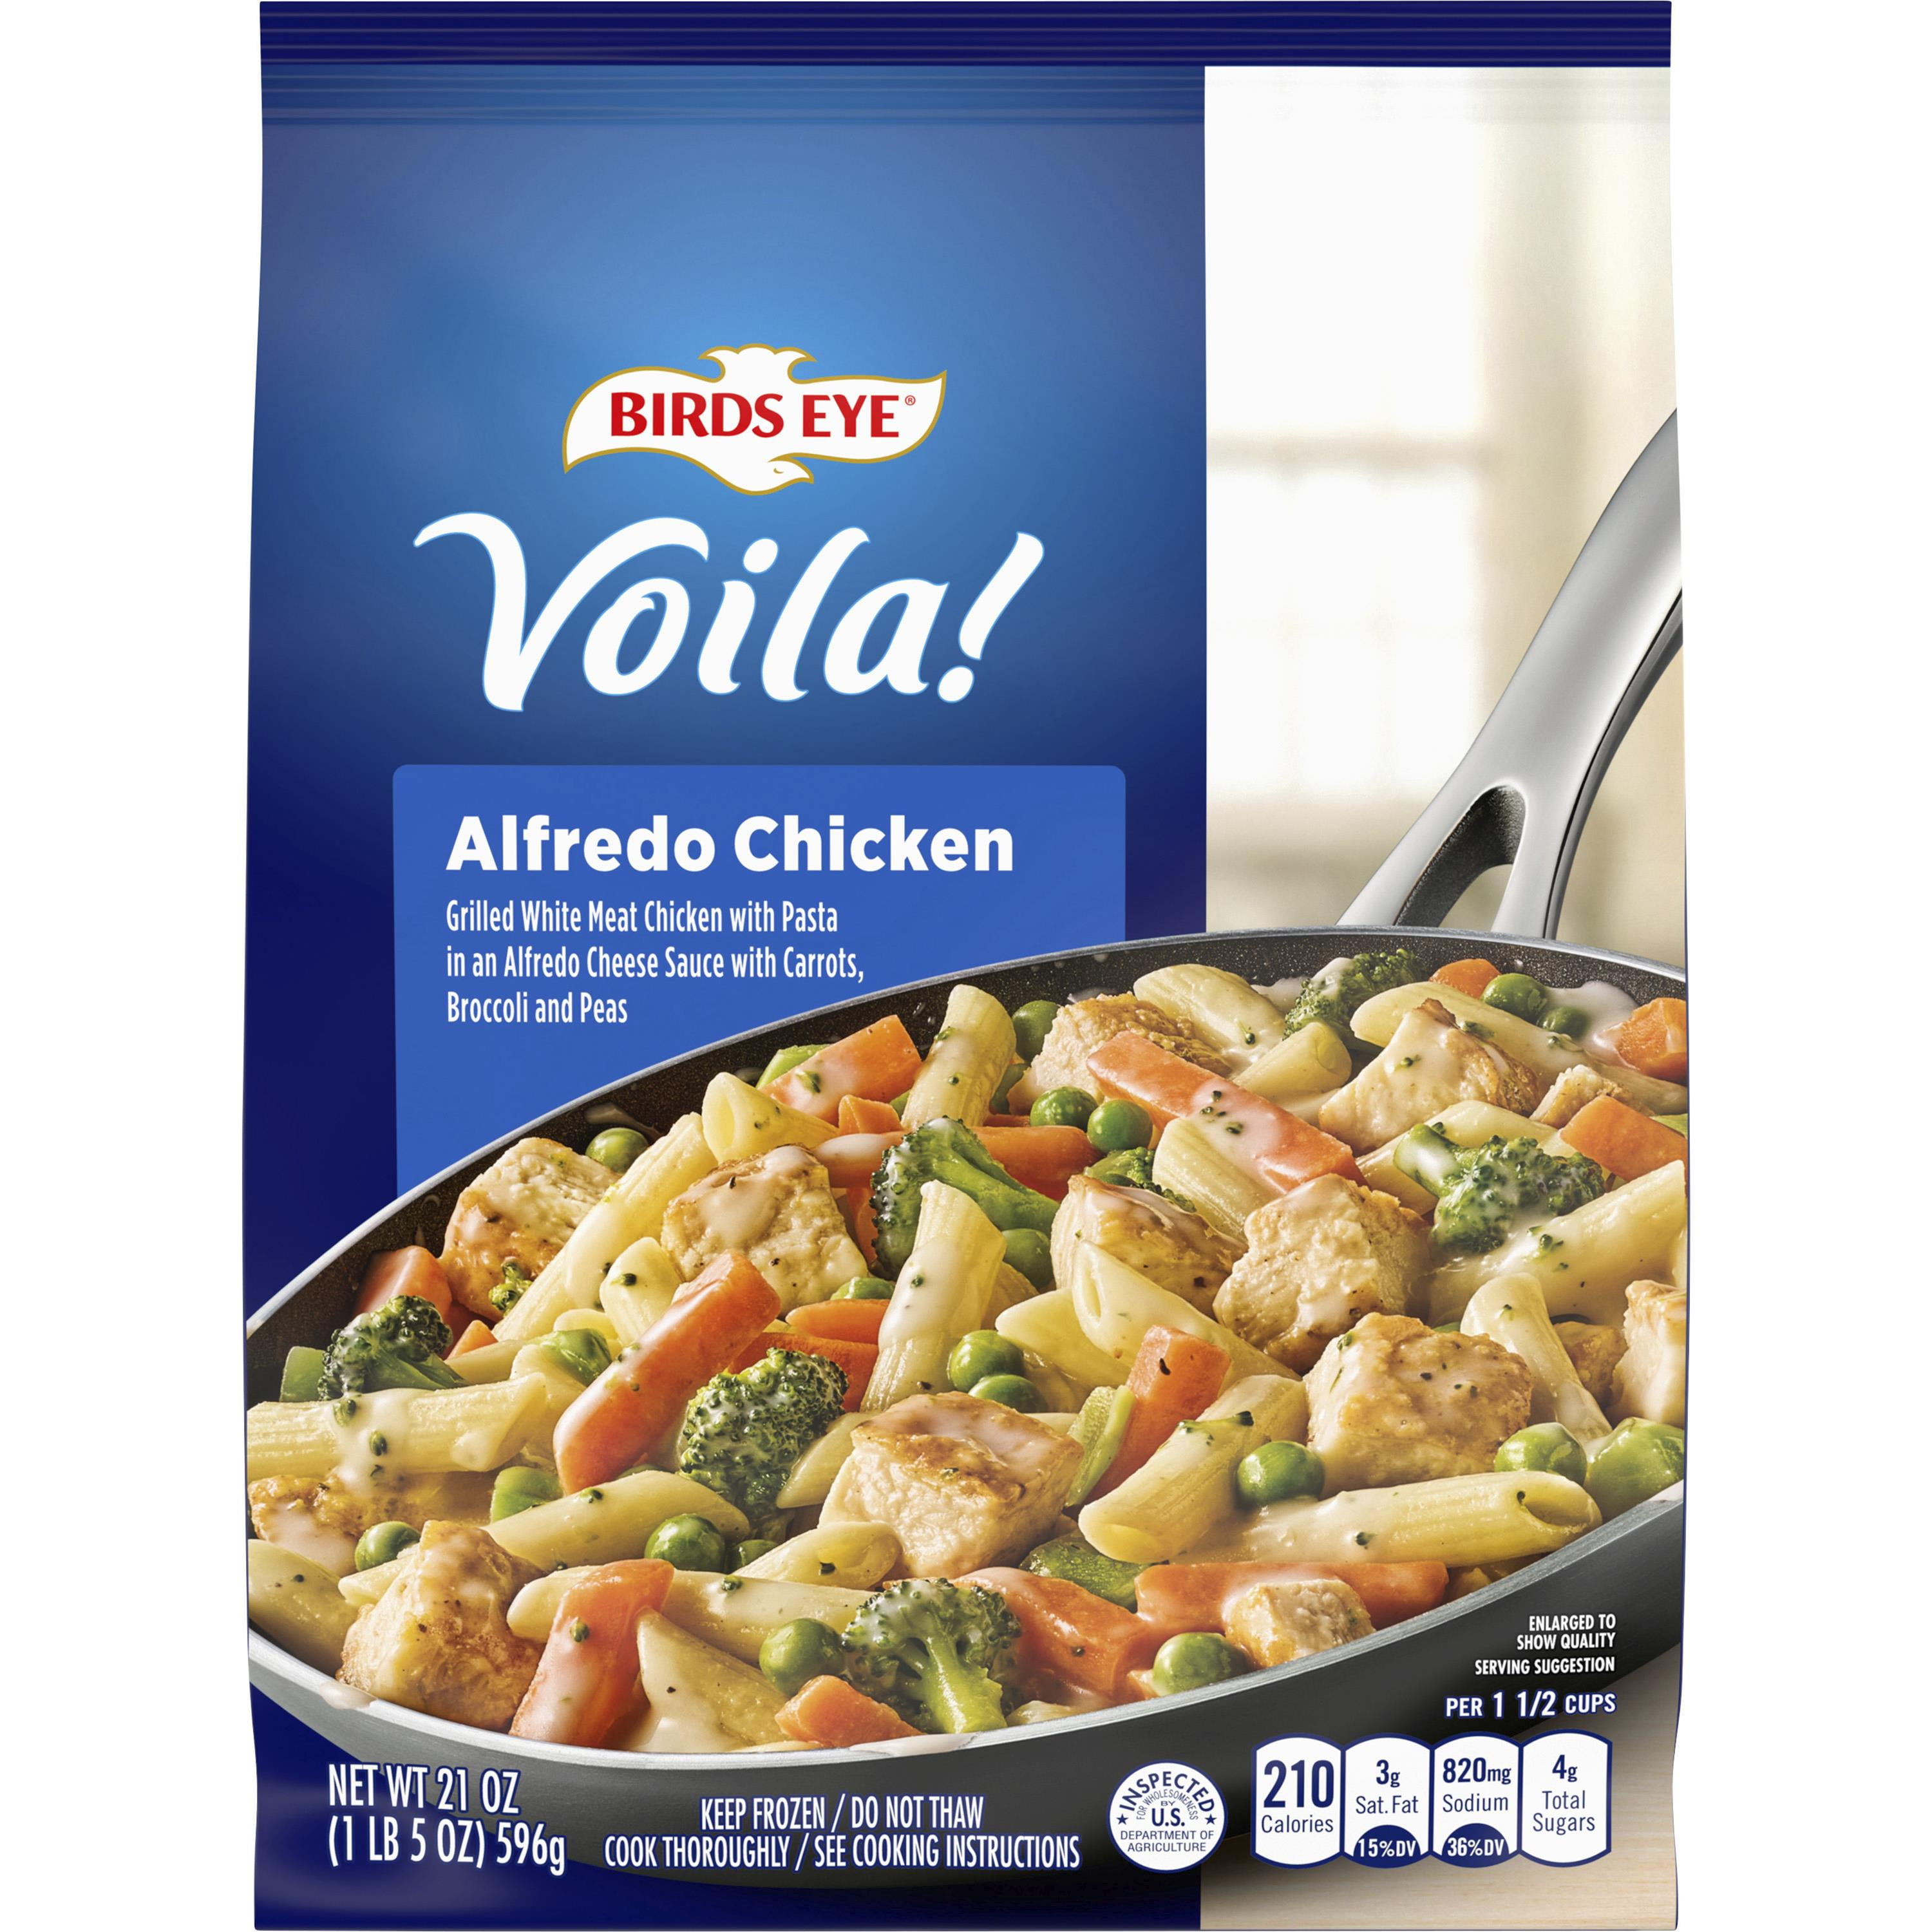 Birds Eye Voila! Alfredo Chicken Skillet Frozen Meal, 21 oz (Frozen)